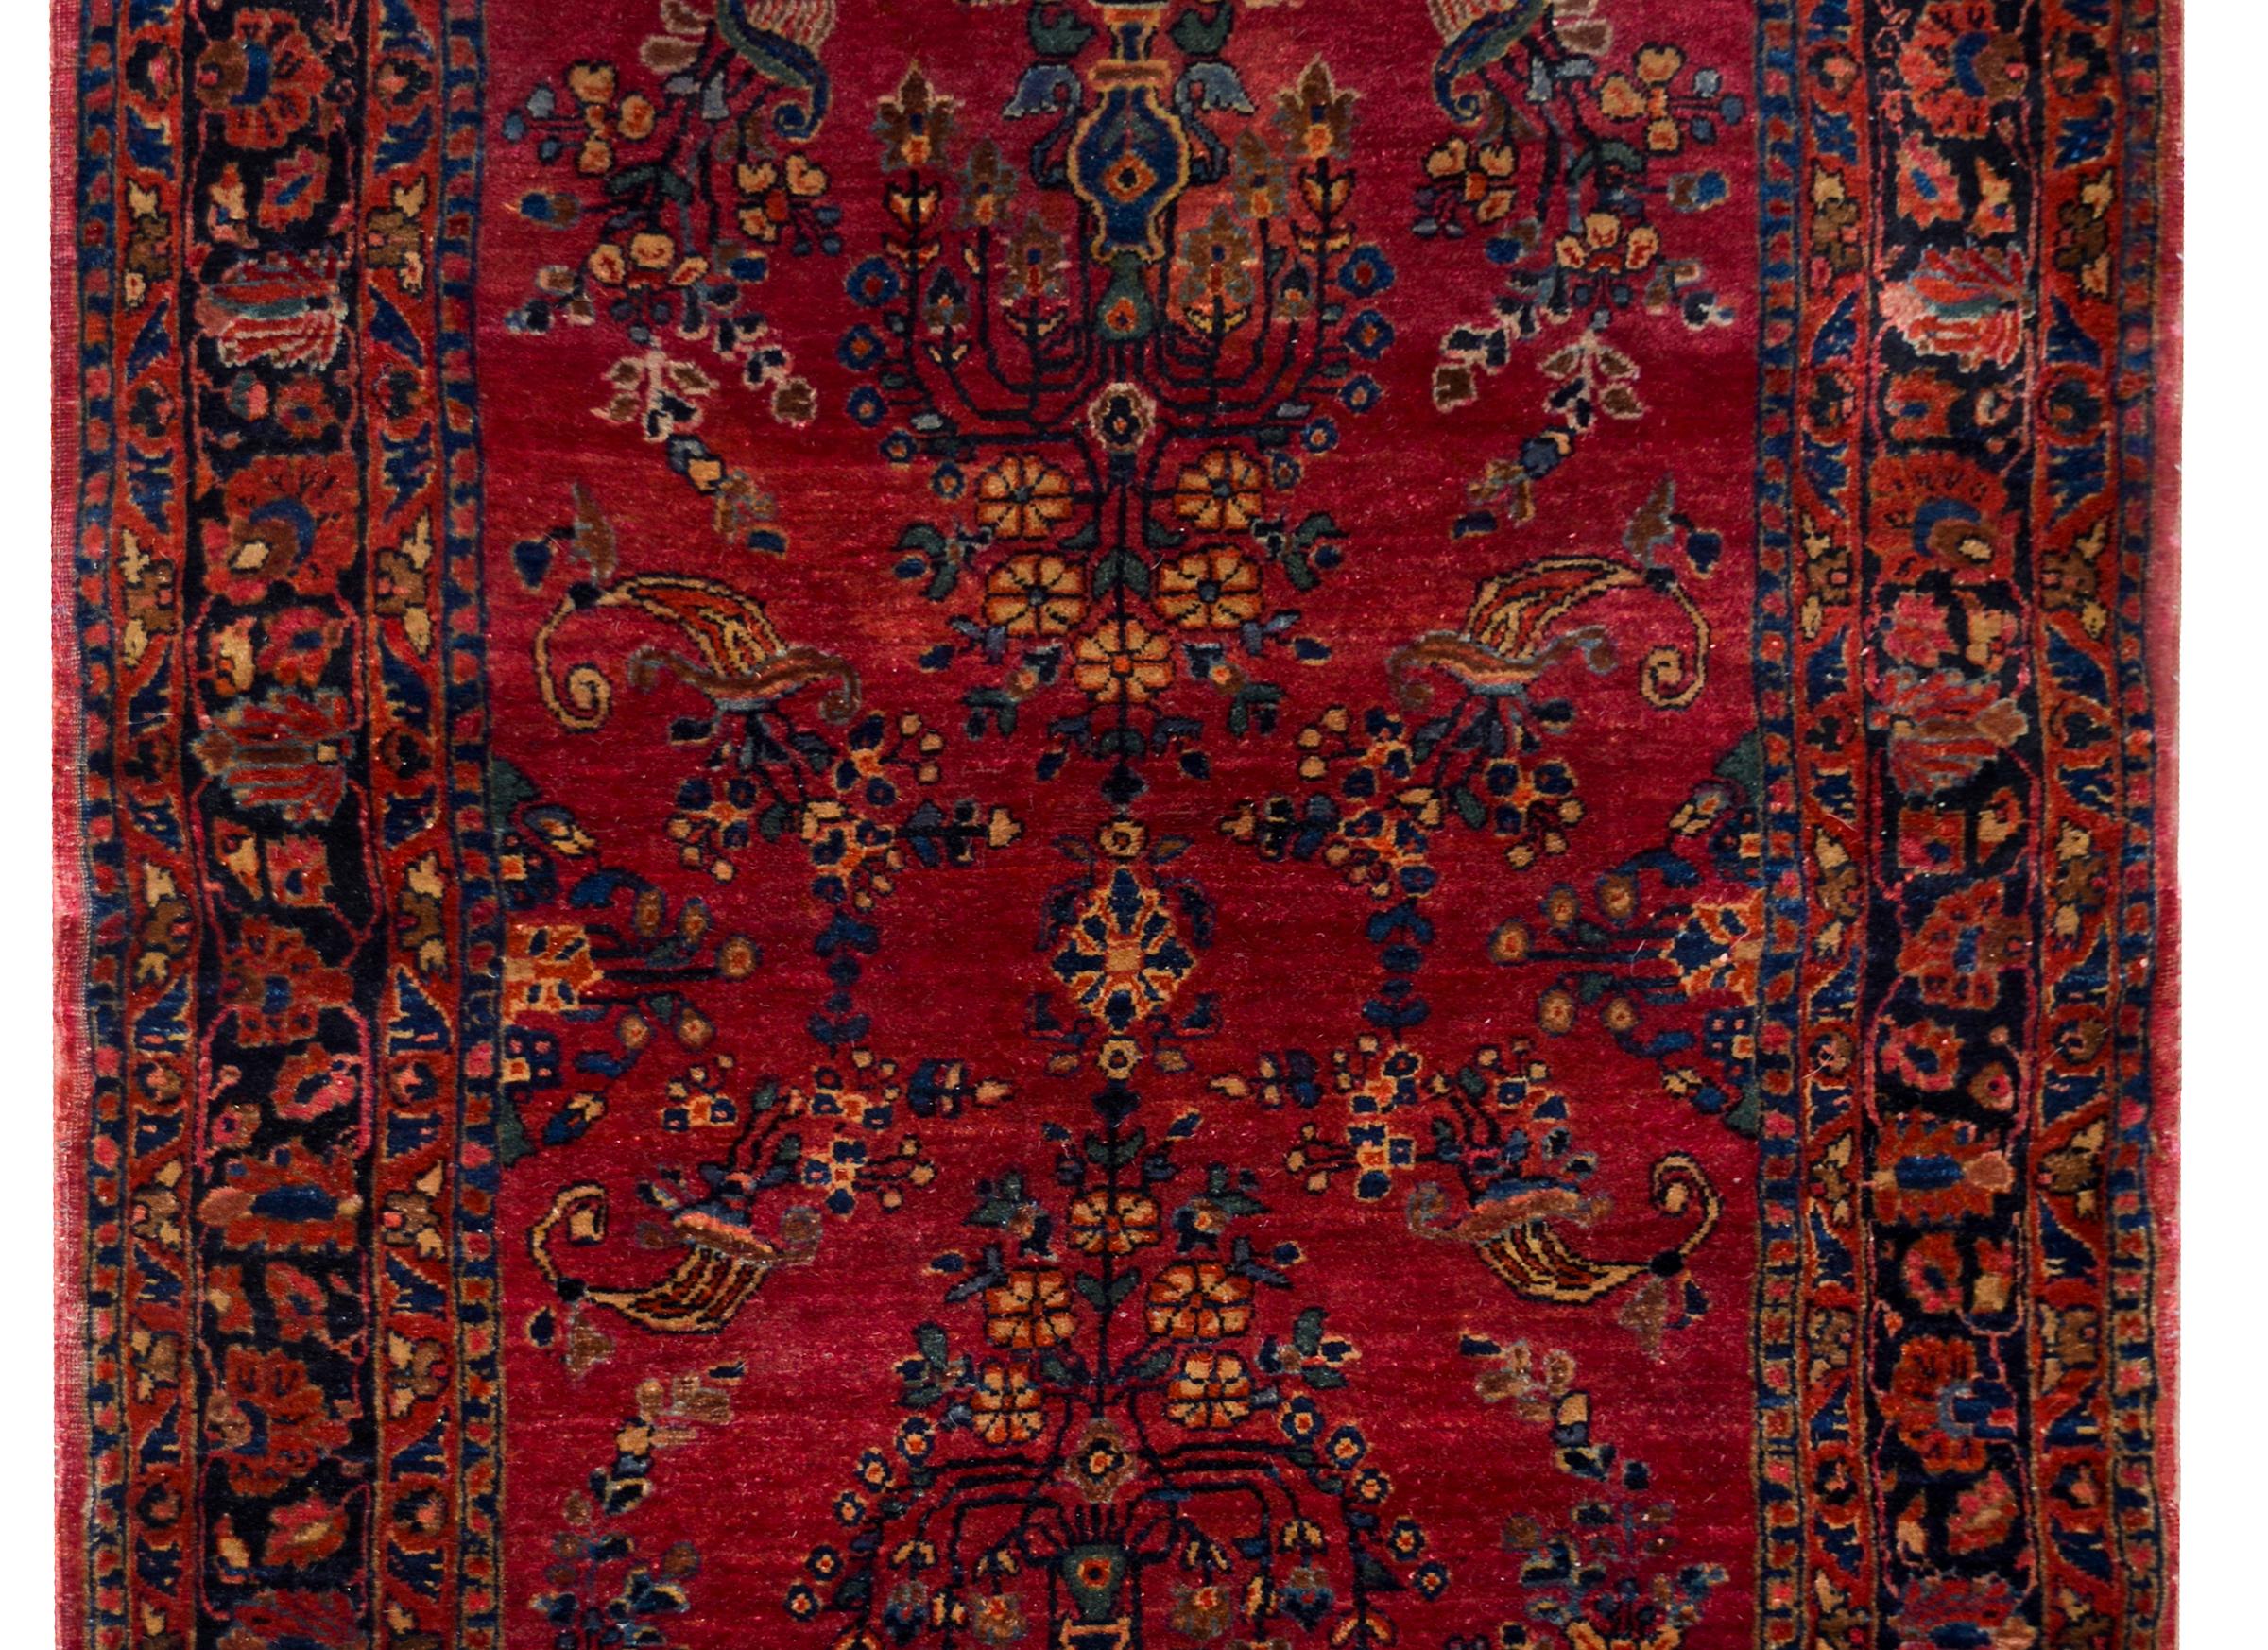 Ein schöner persischer Sarouk-Mohajeran-Teppich aus dem frühen 20. Jahrhundert mit einem gespiegelten Lebensbaum-Muster in Indigo, Creme und Rosa auf einem dunklen cranberryfarbenen Hintergrund, umgeben von einer breiten, mit Blumen und Ranken